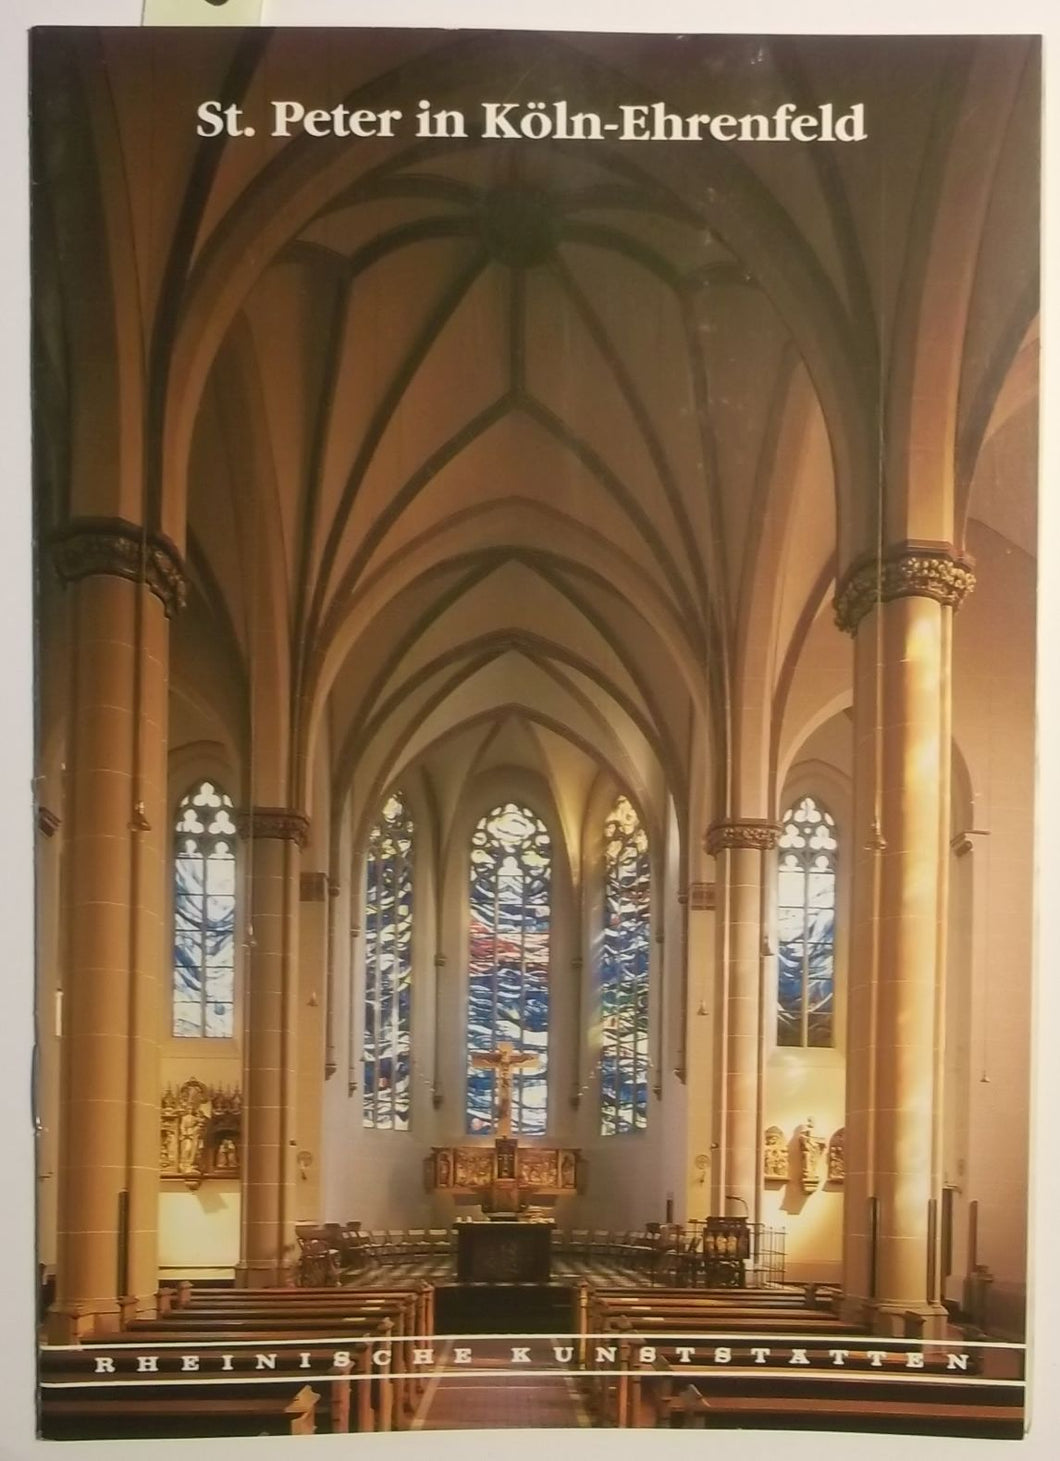 Rheinische Kunststätten Heft 380 - St. Peter in Köln-Ehrenfeld (1993)